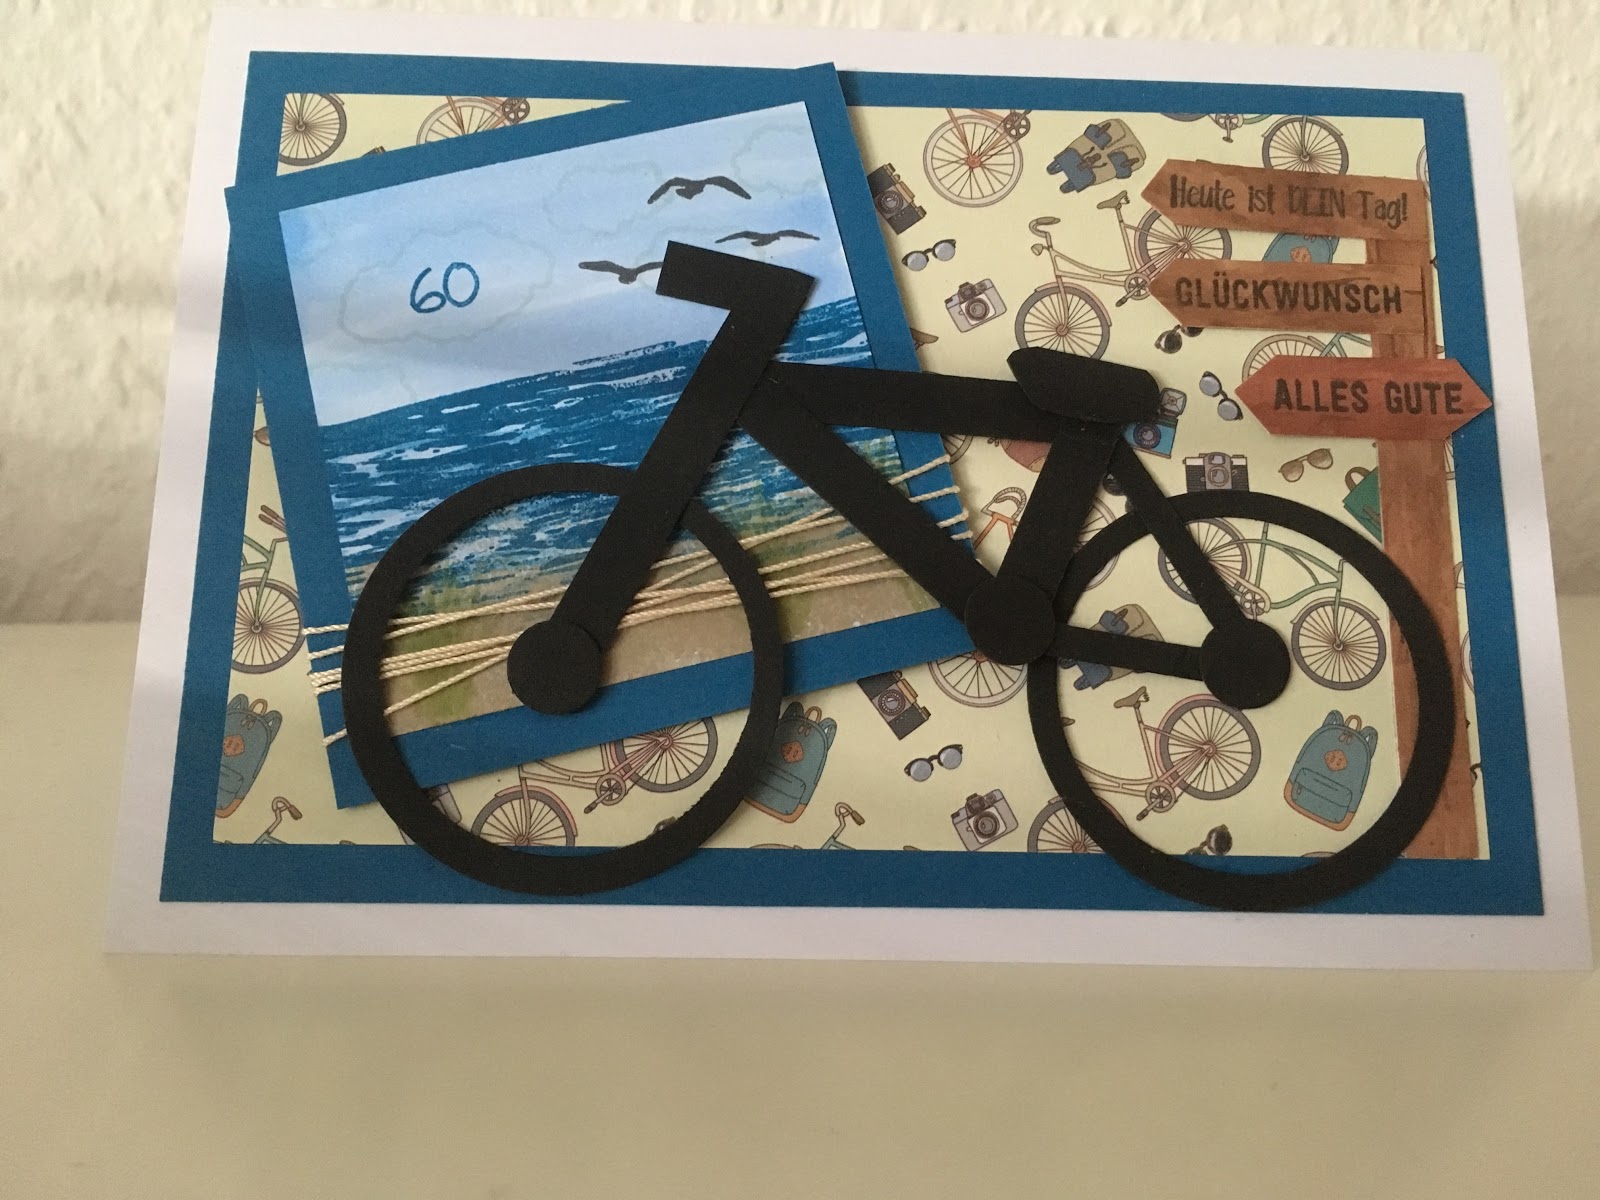 Kristin Stempelmädels "Fahrrad" Karte als Gutschein